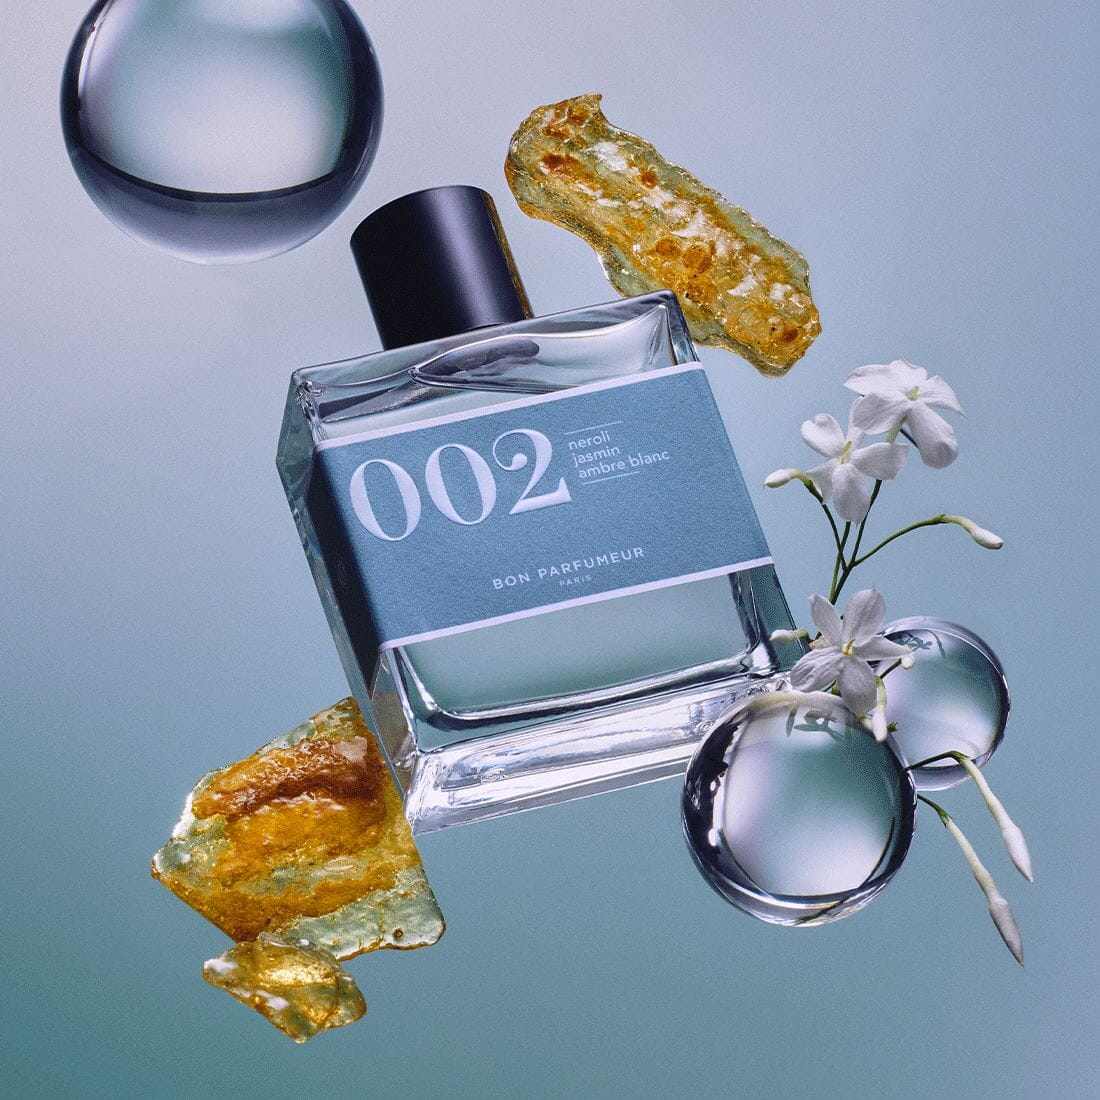 Eau de parfum 002 au néroli, au jasmin et à l'ambre blanc Eau de parfum Bon Parfumeur France 